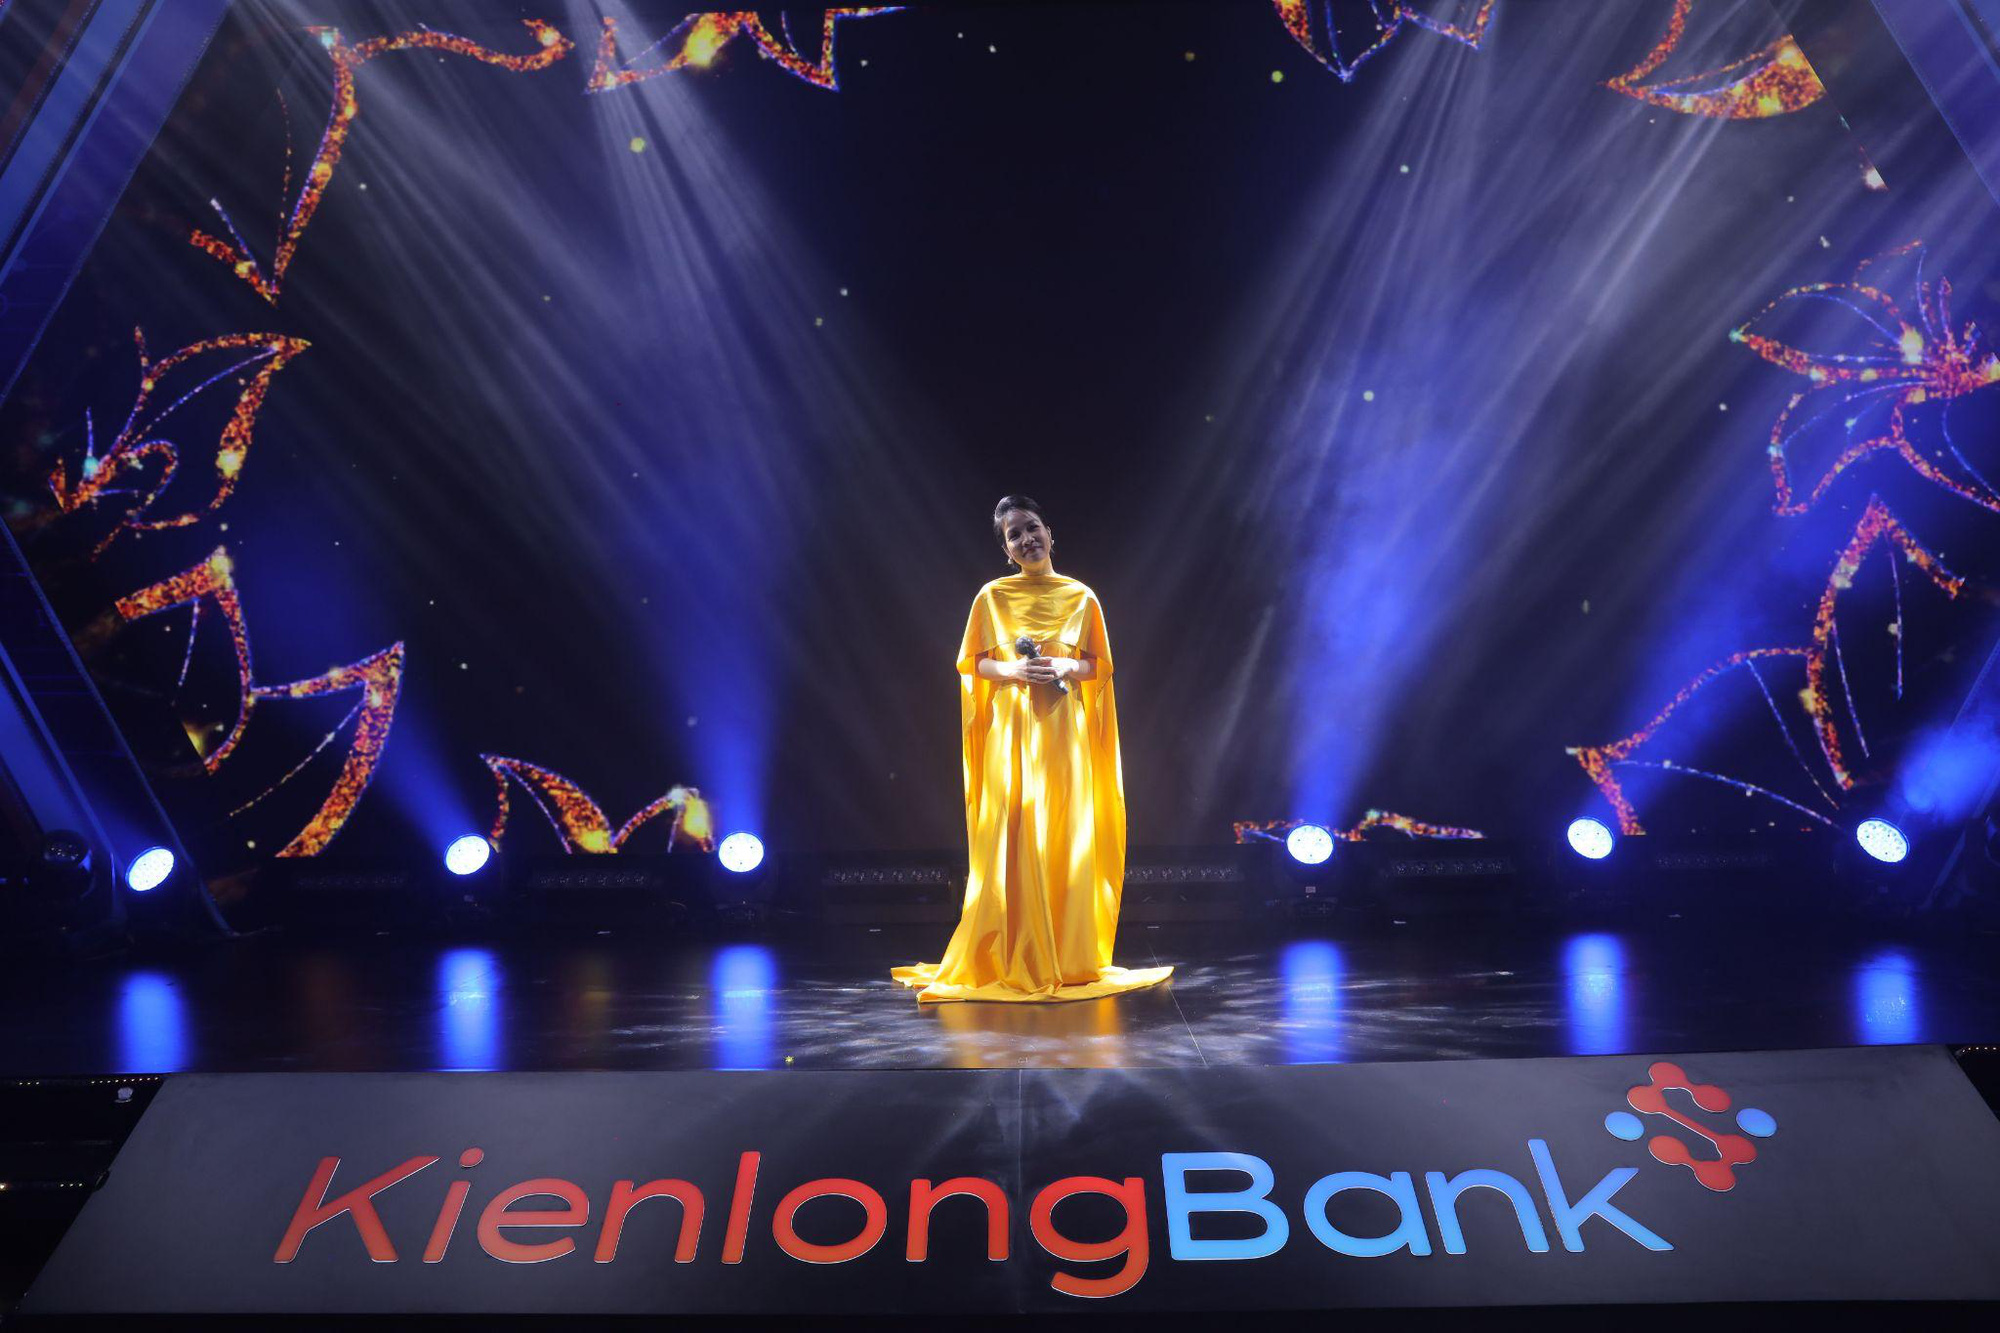 Mãn nhãn với “bữa tiệc nghệ thuật” kỷ niệm 26 năm thành lập KienlongBank - Ảnh 7.